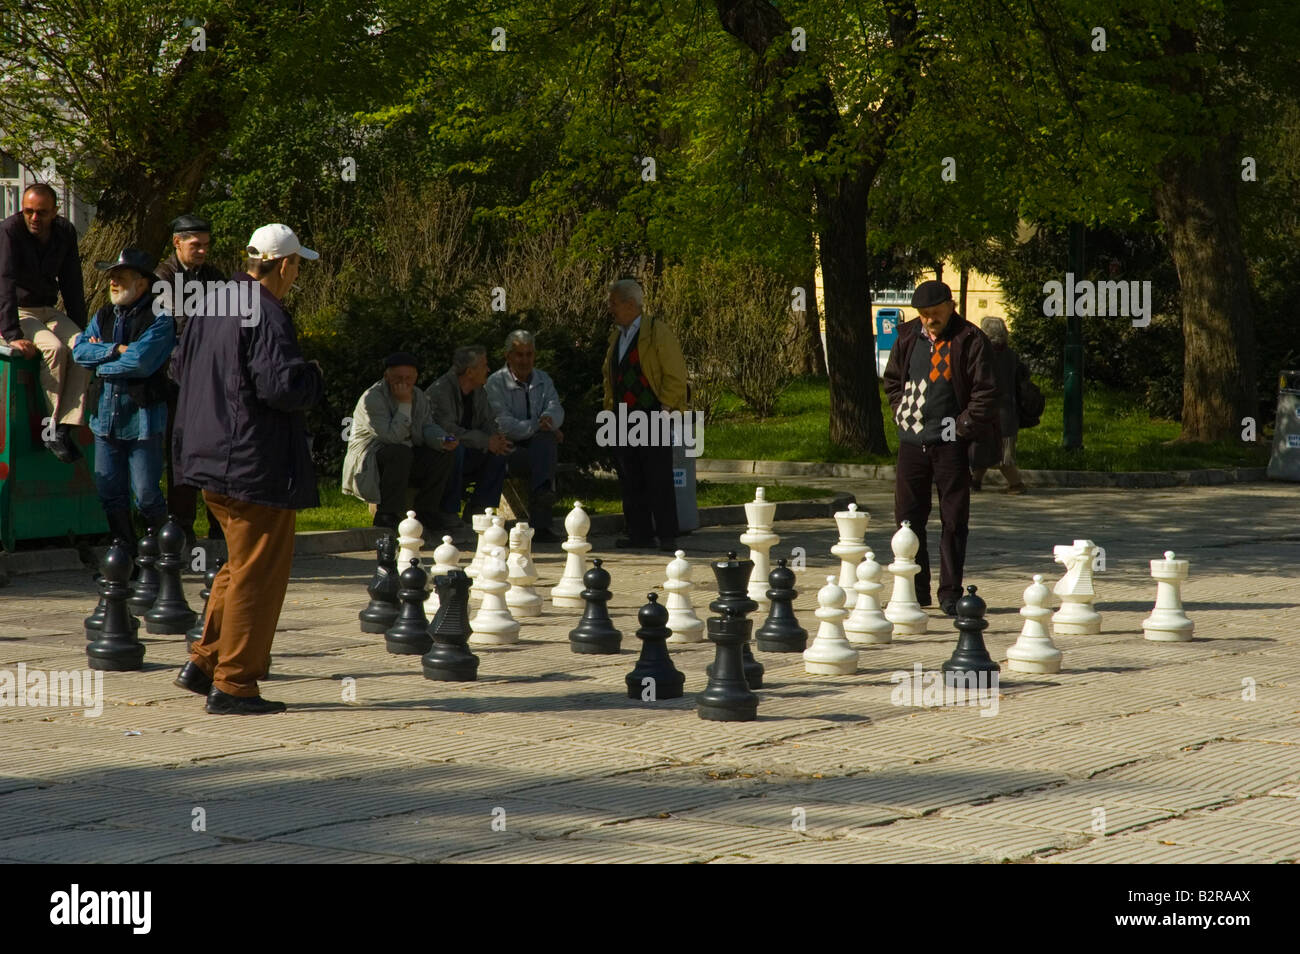 Les hommes jouant aux échecs à Trg Alija Izetbegovica square à Sarajevo Bosnie-Herzégovine Europe Banque D'Images